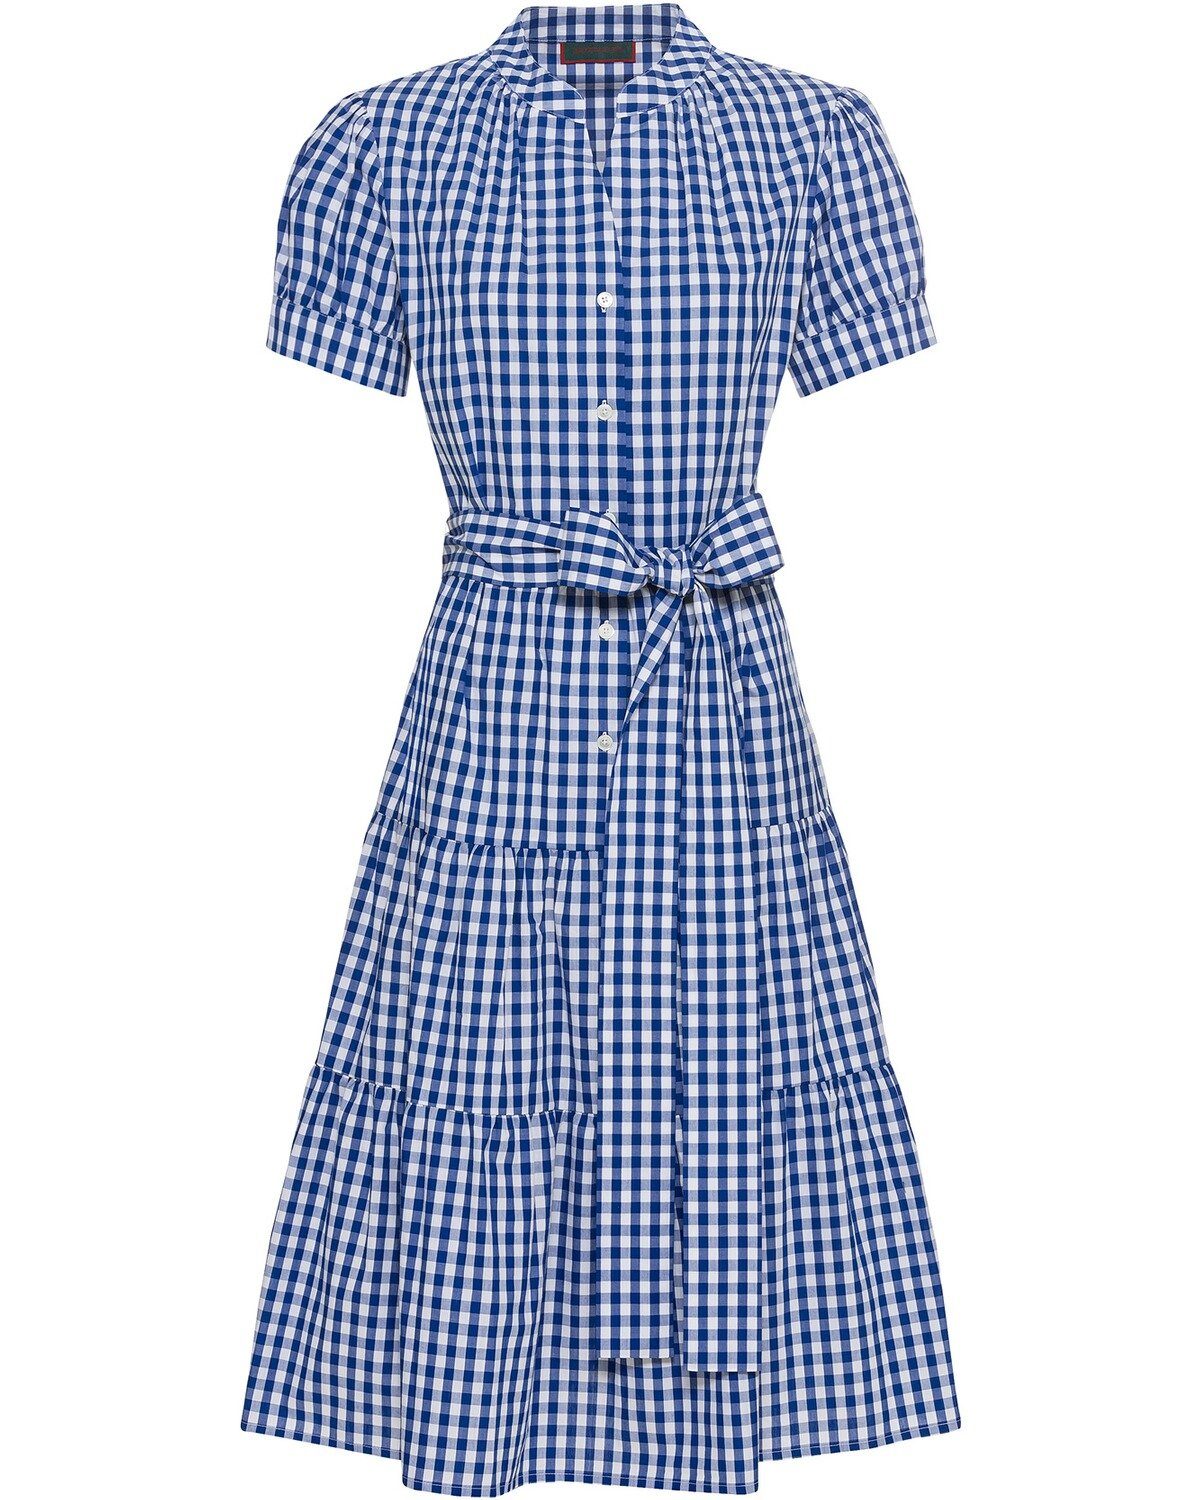 Reitmayer Trachtenkleid Halbarm-Kleid mit Vichy-Karo